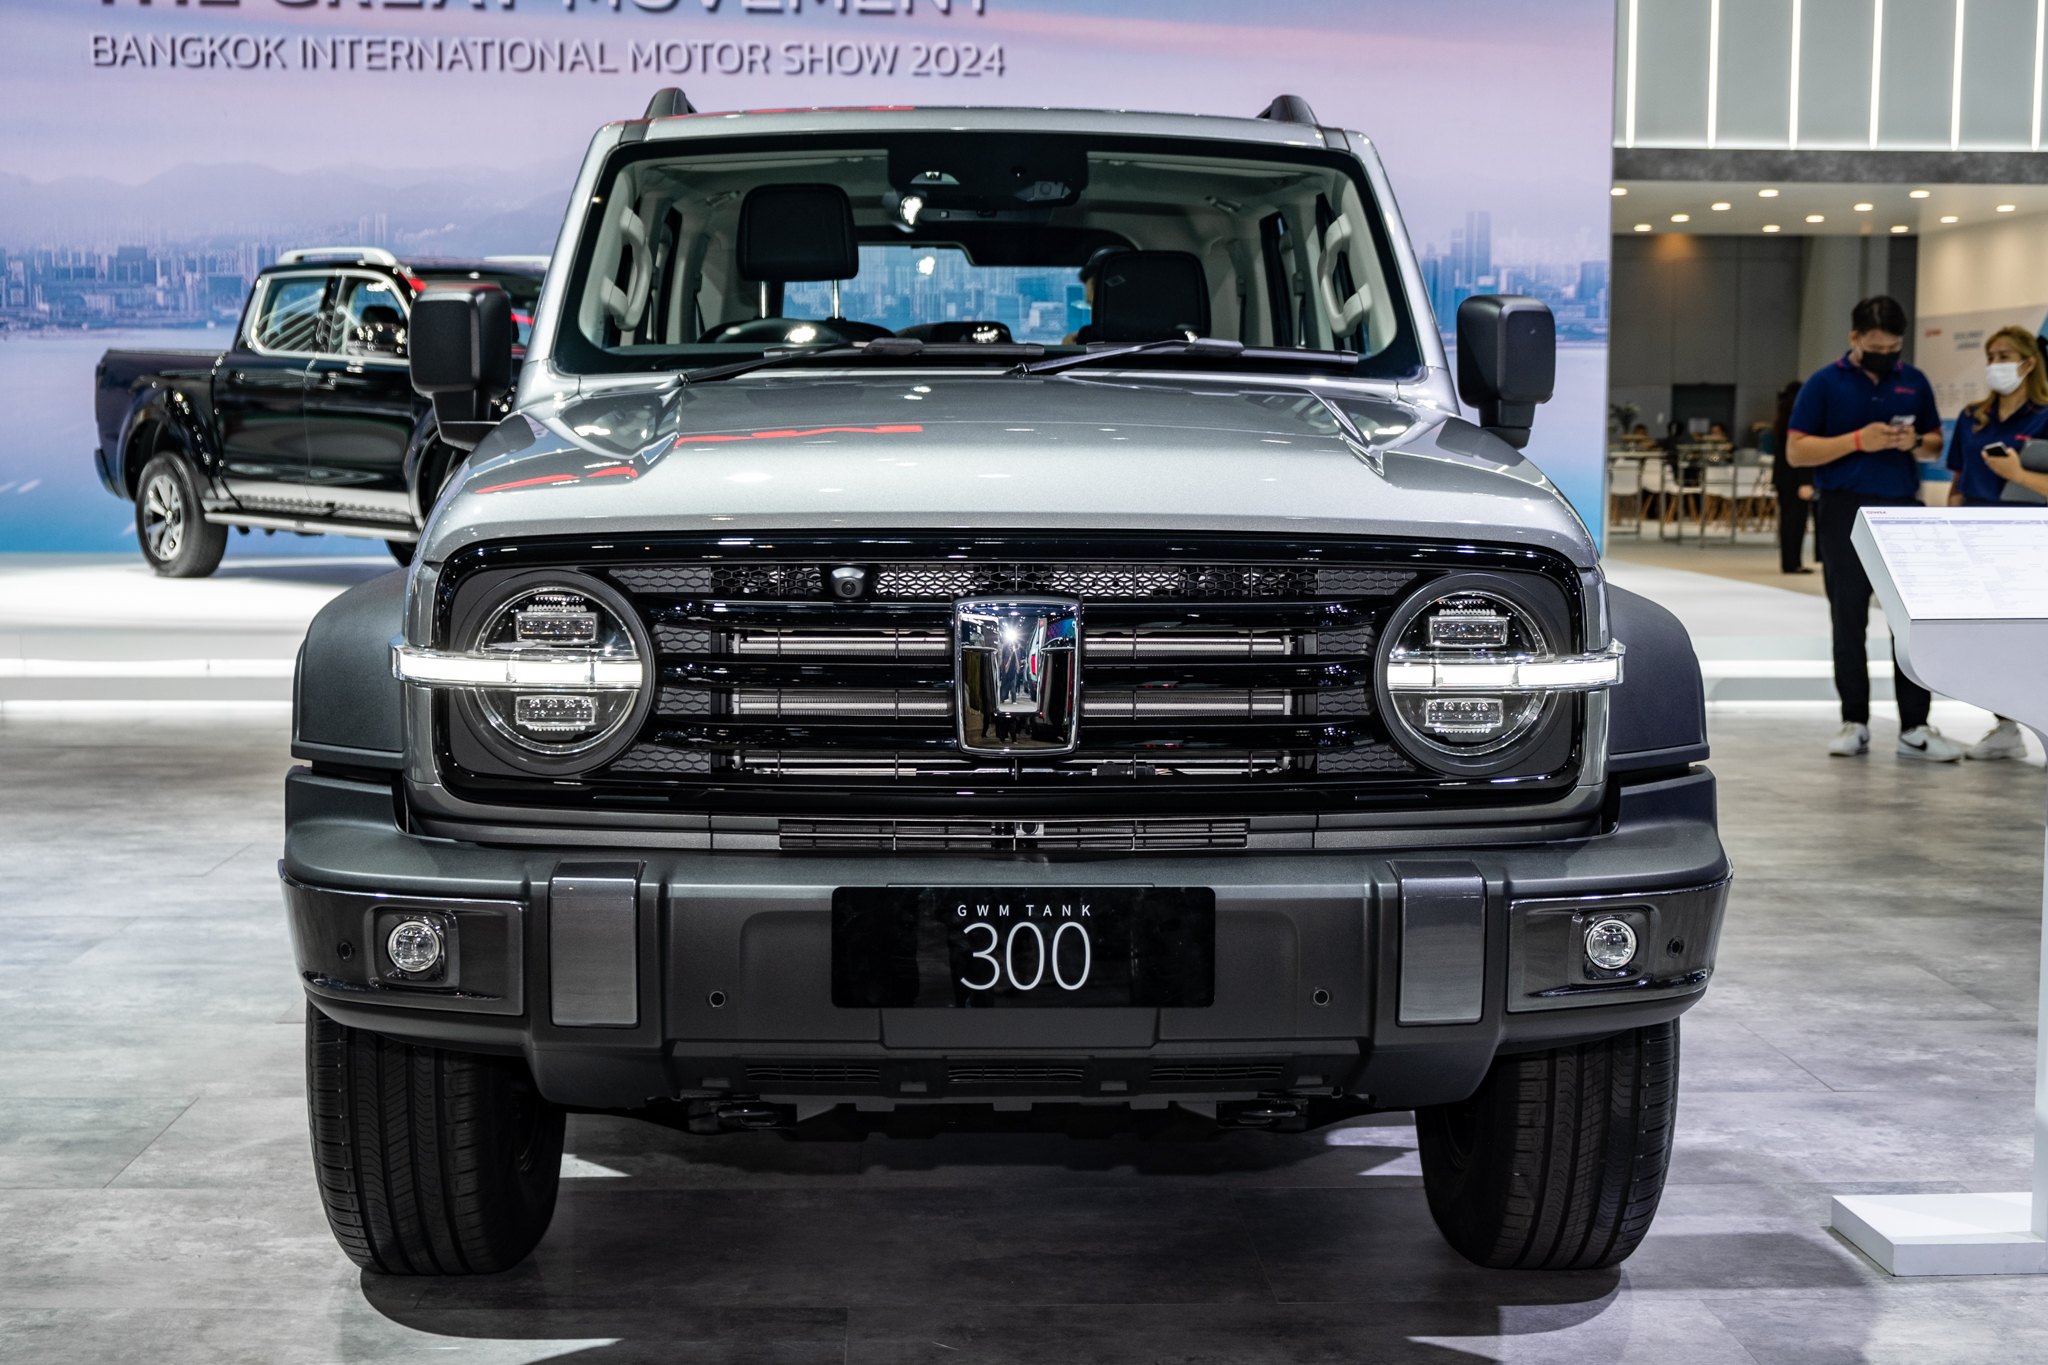 Đây là lý do vì sao GWM Tank 300 có giá dự kiến hơn 1 tỷ tại Việt Nam: Nhiều trang bị off-road như Land Rover, máy hybrid 2.0L, hộp số 9 cấp - ảnh 3